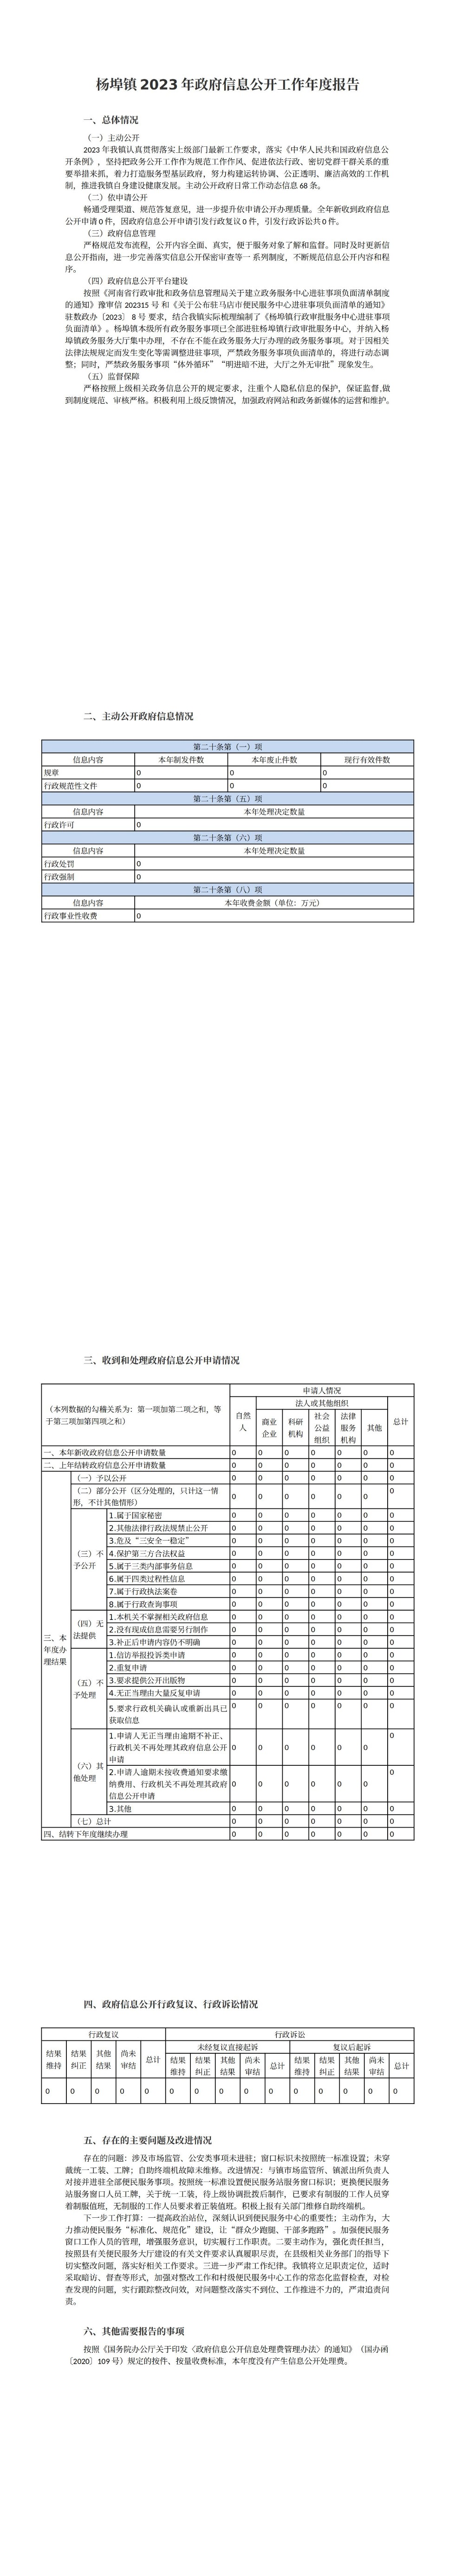 杨埠镇2023年政府信息公开工作年度报告_00.jpg